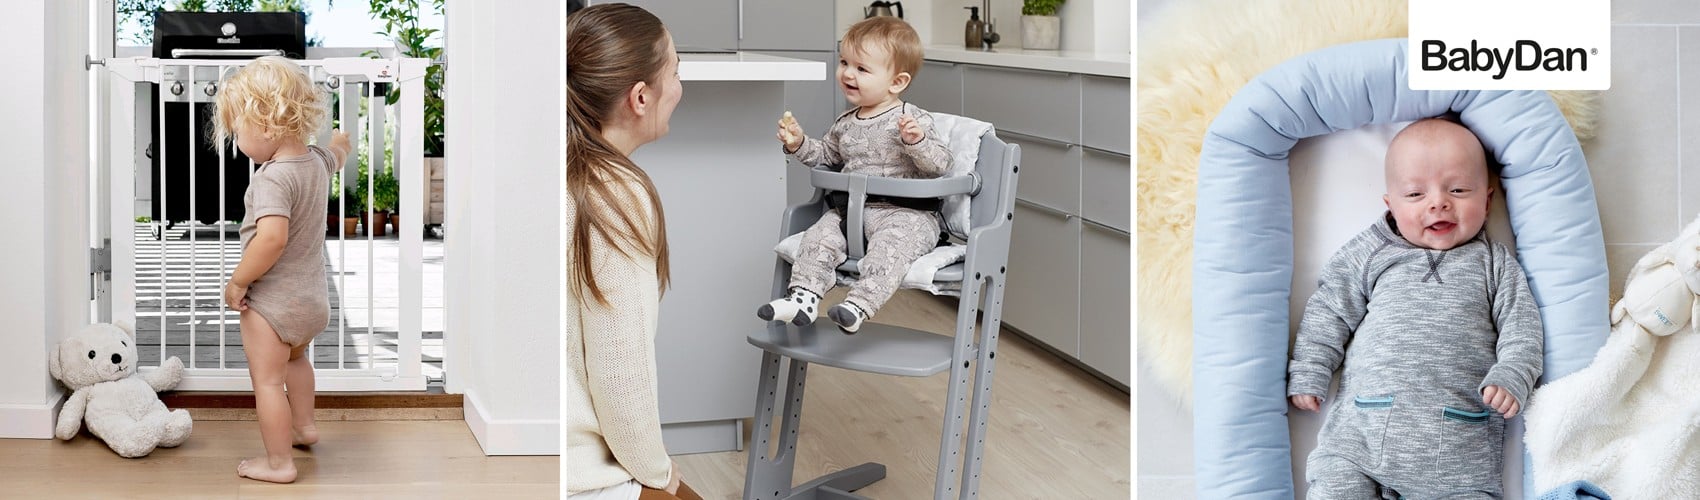 Babys und Kinder - große Auswahl an Produkten für Ihr Baby oder Kind